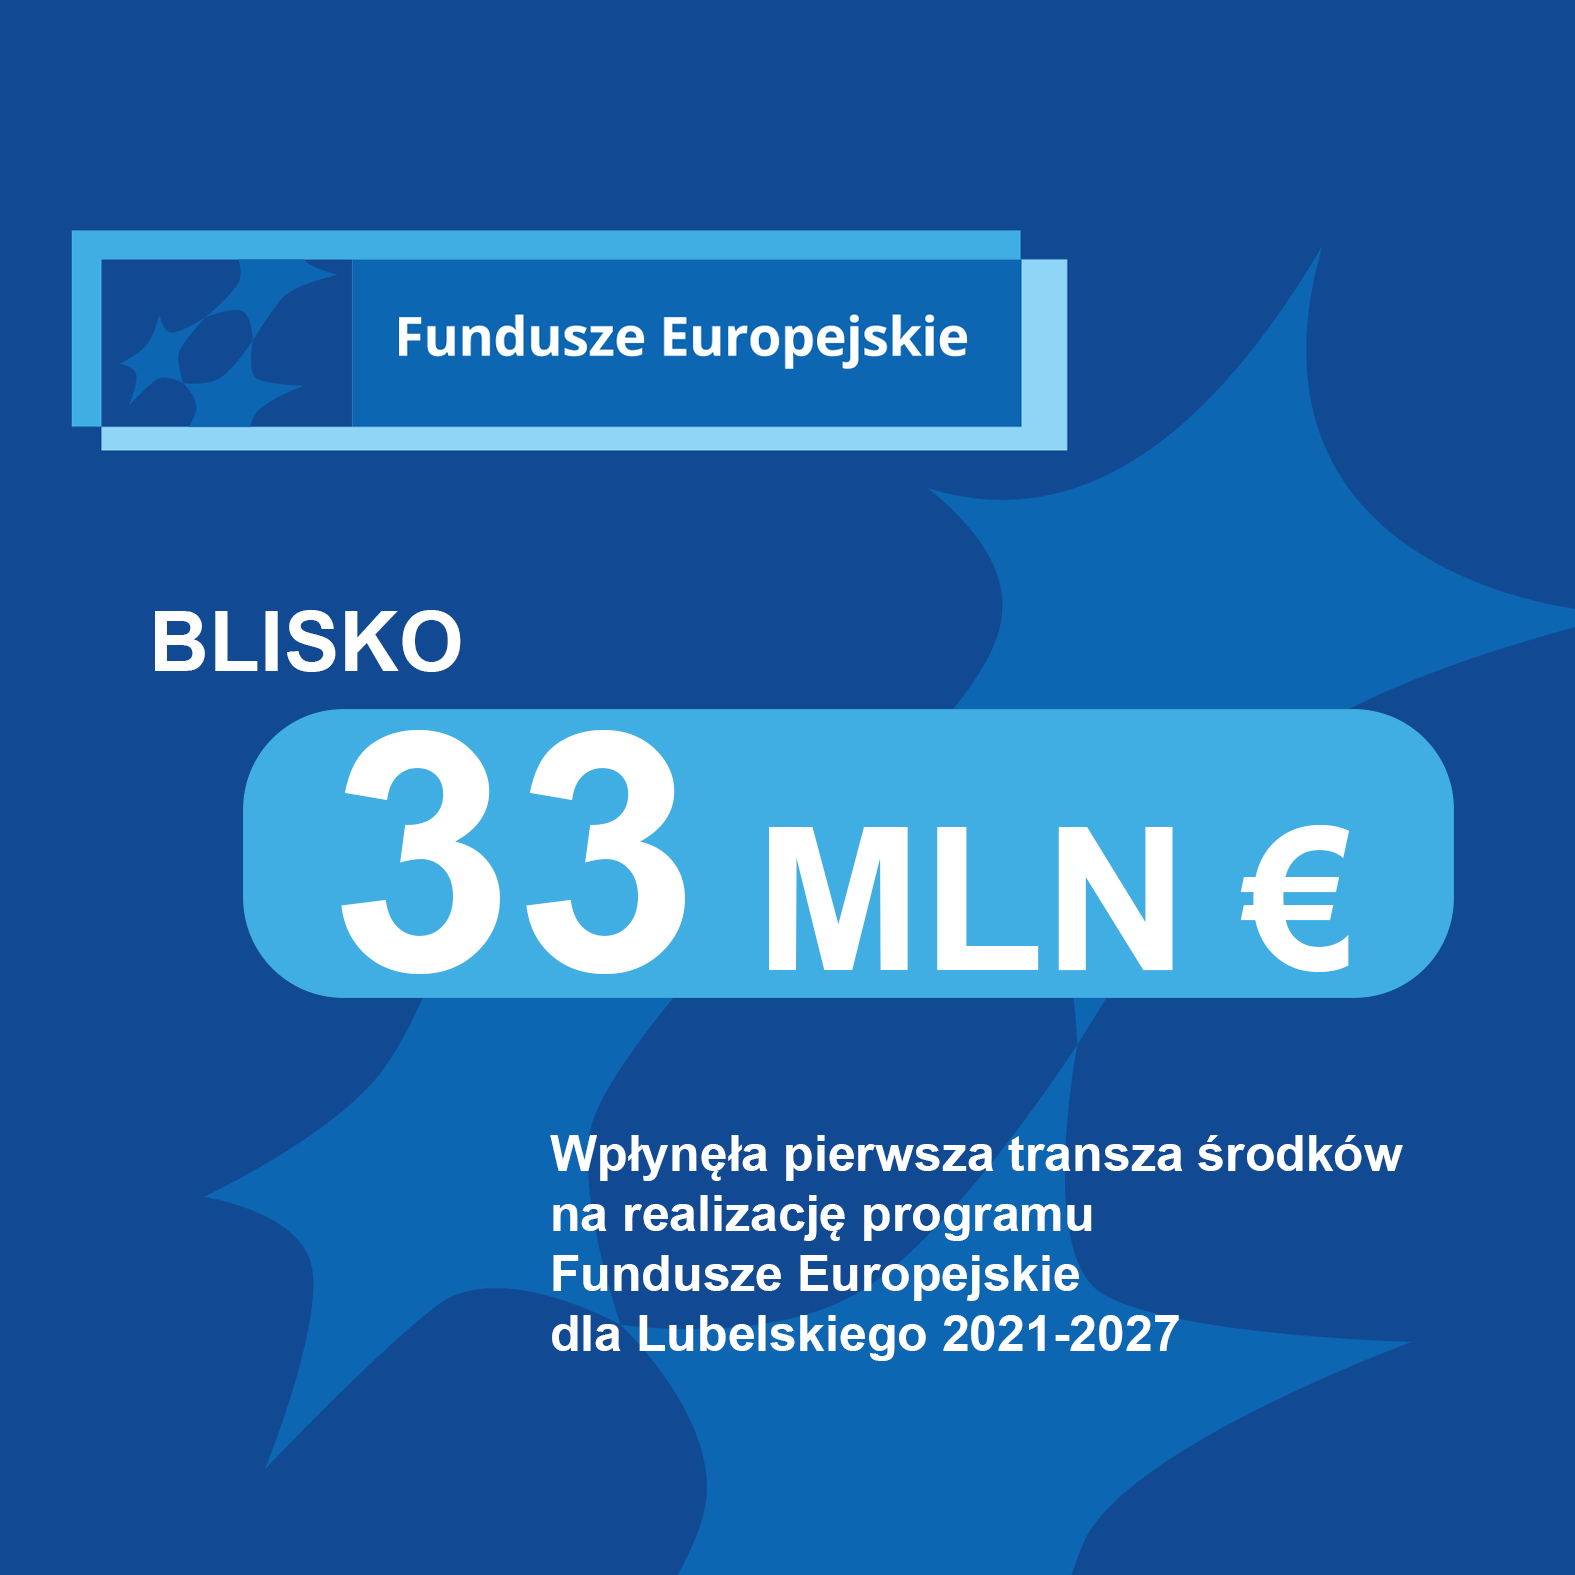 KE przekazała pierwsze środki na realizację programu Fundusze Europejskie  dla Lubelskiego 2021-2027